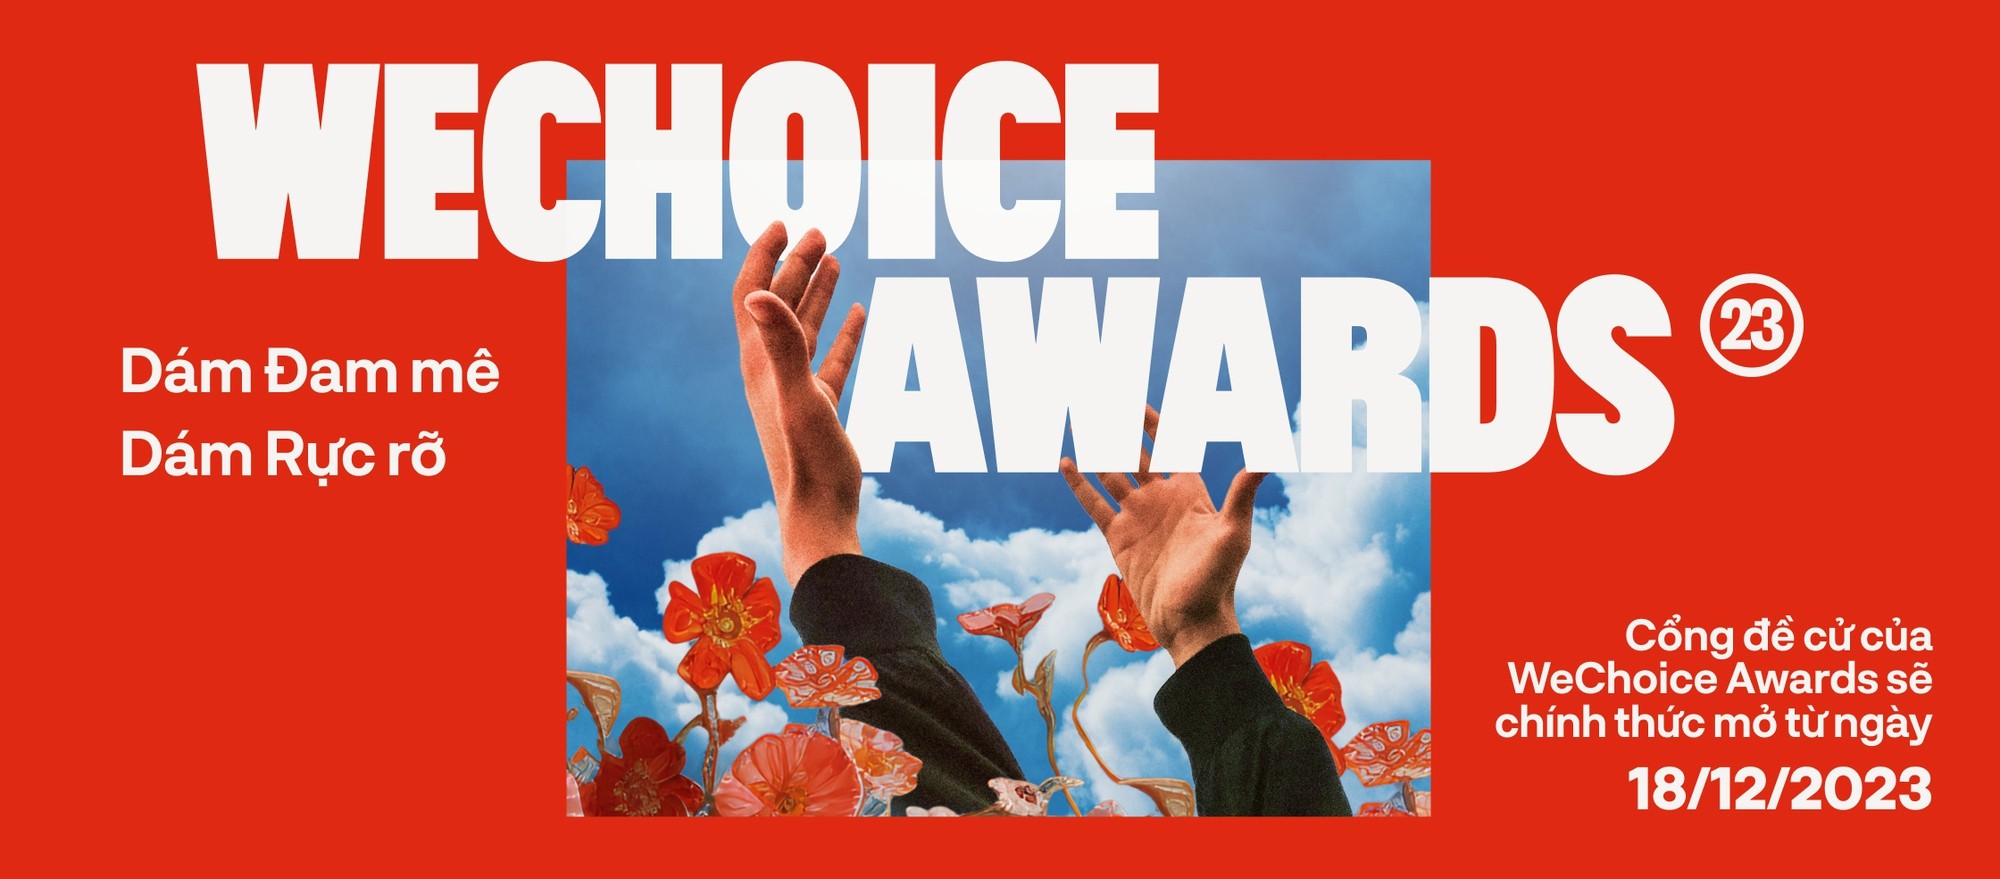 Xịt keo lọt vào đề cử hạng mục Z-Slang-Cụm từ lóng của năm trong khuôn khổ giải thưởng Wechoice Awards